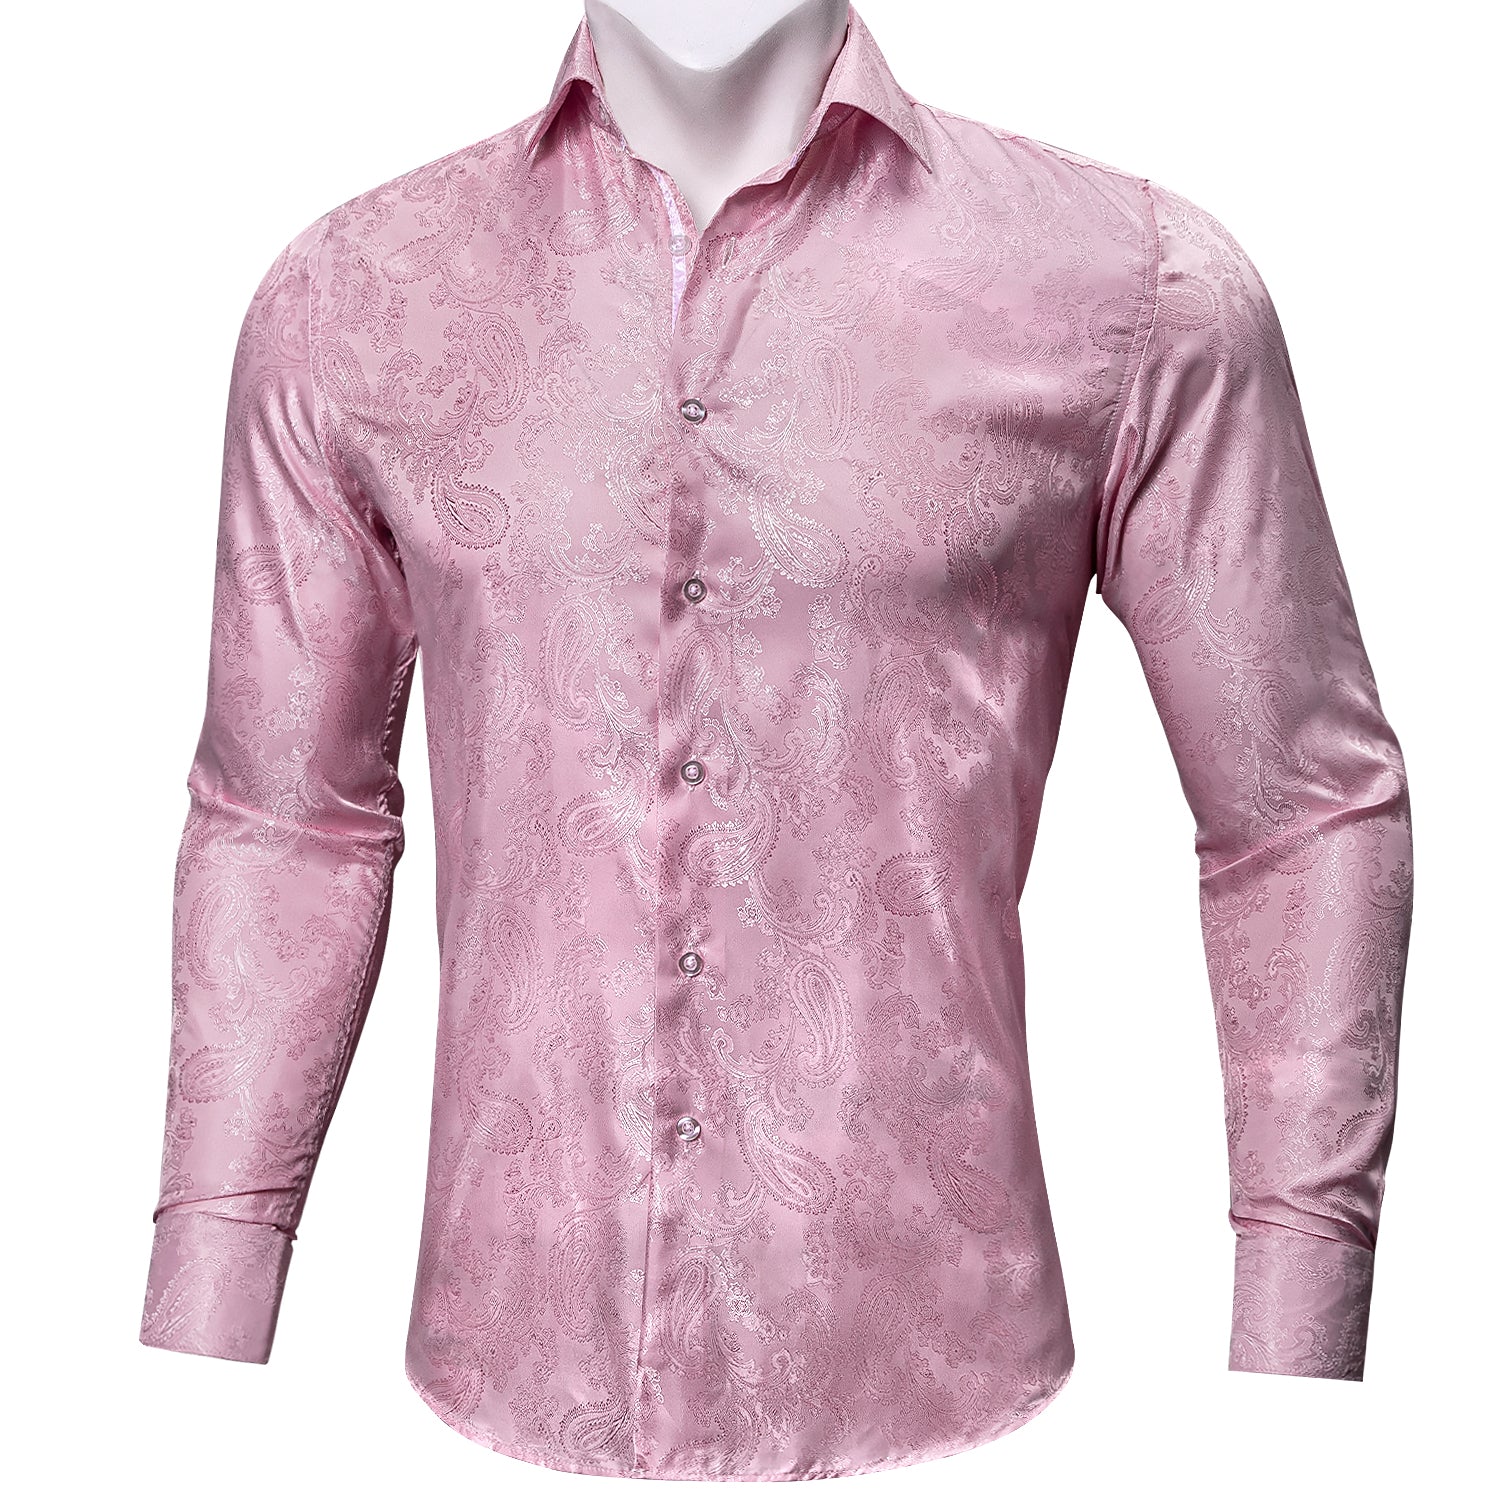 Barry.wang Fashion Pink Paisley Long Sleeves Silk Shirt